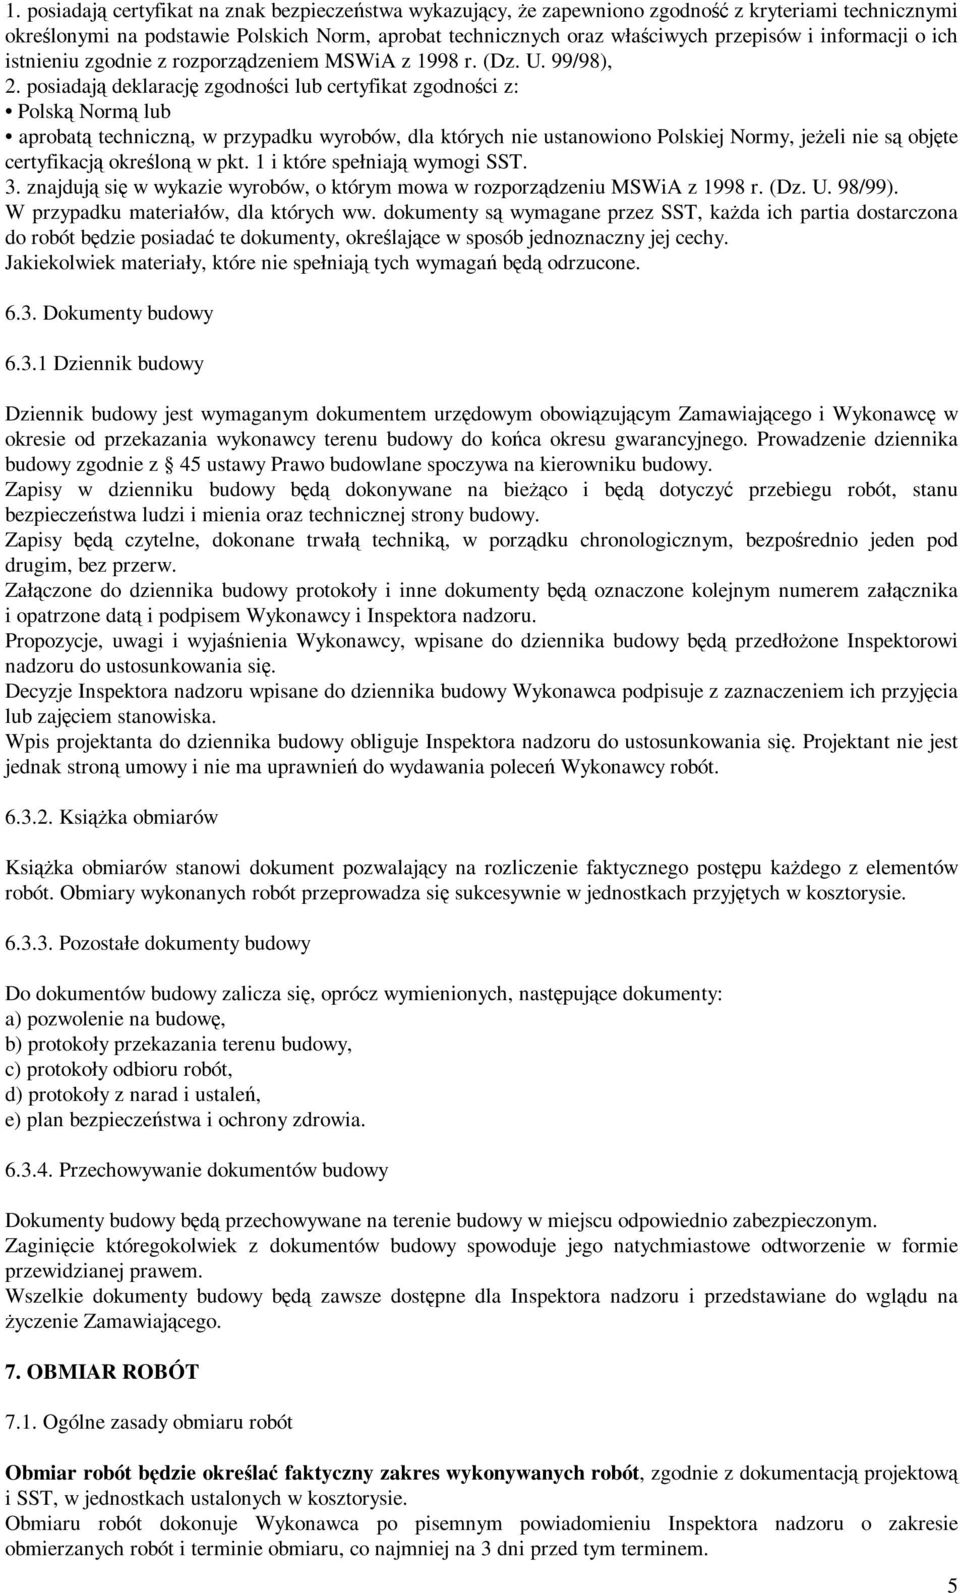 posiadają deklarację zgodności lub certyfikat zgodności z: Polską Normą lub aprobatą techniczną, w przypadku wyrobów, dla których nie ustanowiono Polskiej Normy, jeżeli nie są objęte certyfikacją